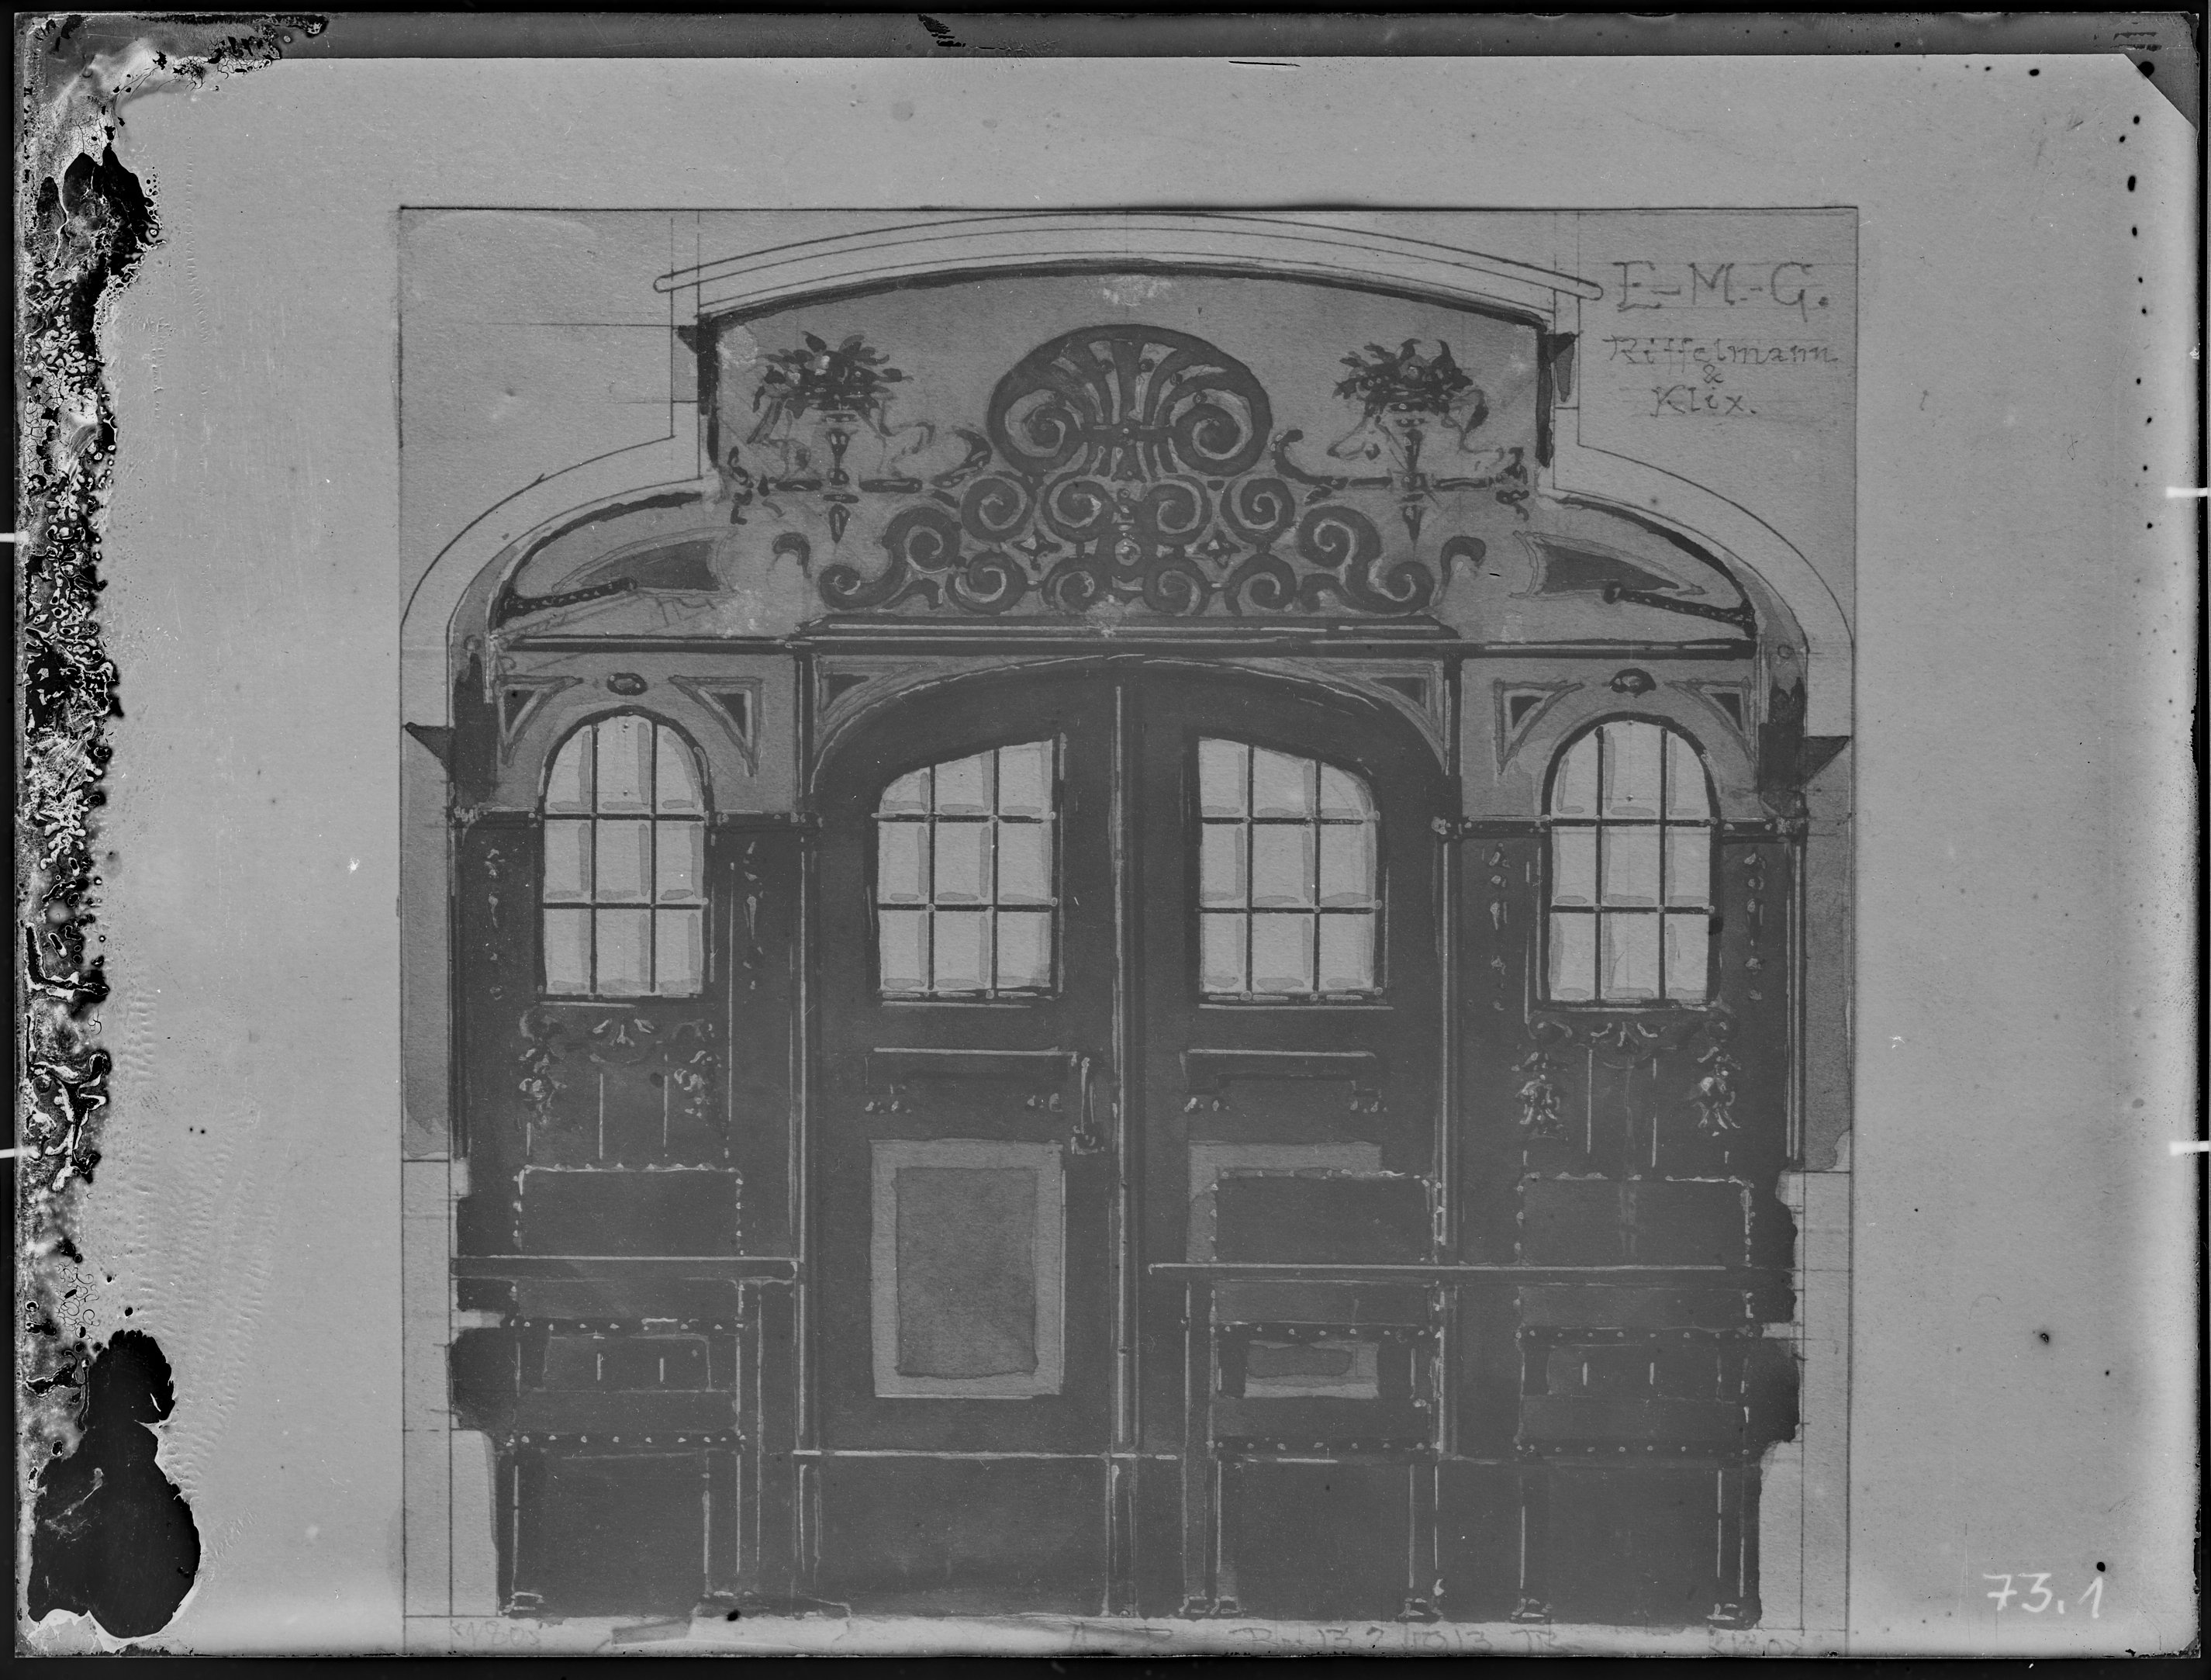 Fotografie: Entwurfszeichnung einer Eingangstür zum Speisesalon eines Speisewagens, 1913. Eisenbahn-Speisewagen-Betrieb Gustav Riffelmann, Inhaber Gus (Verkehrsmuseum Dresden CC BY-NC-SA)